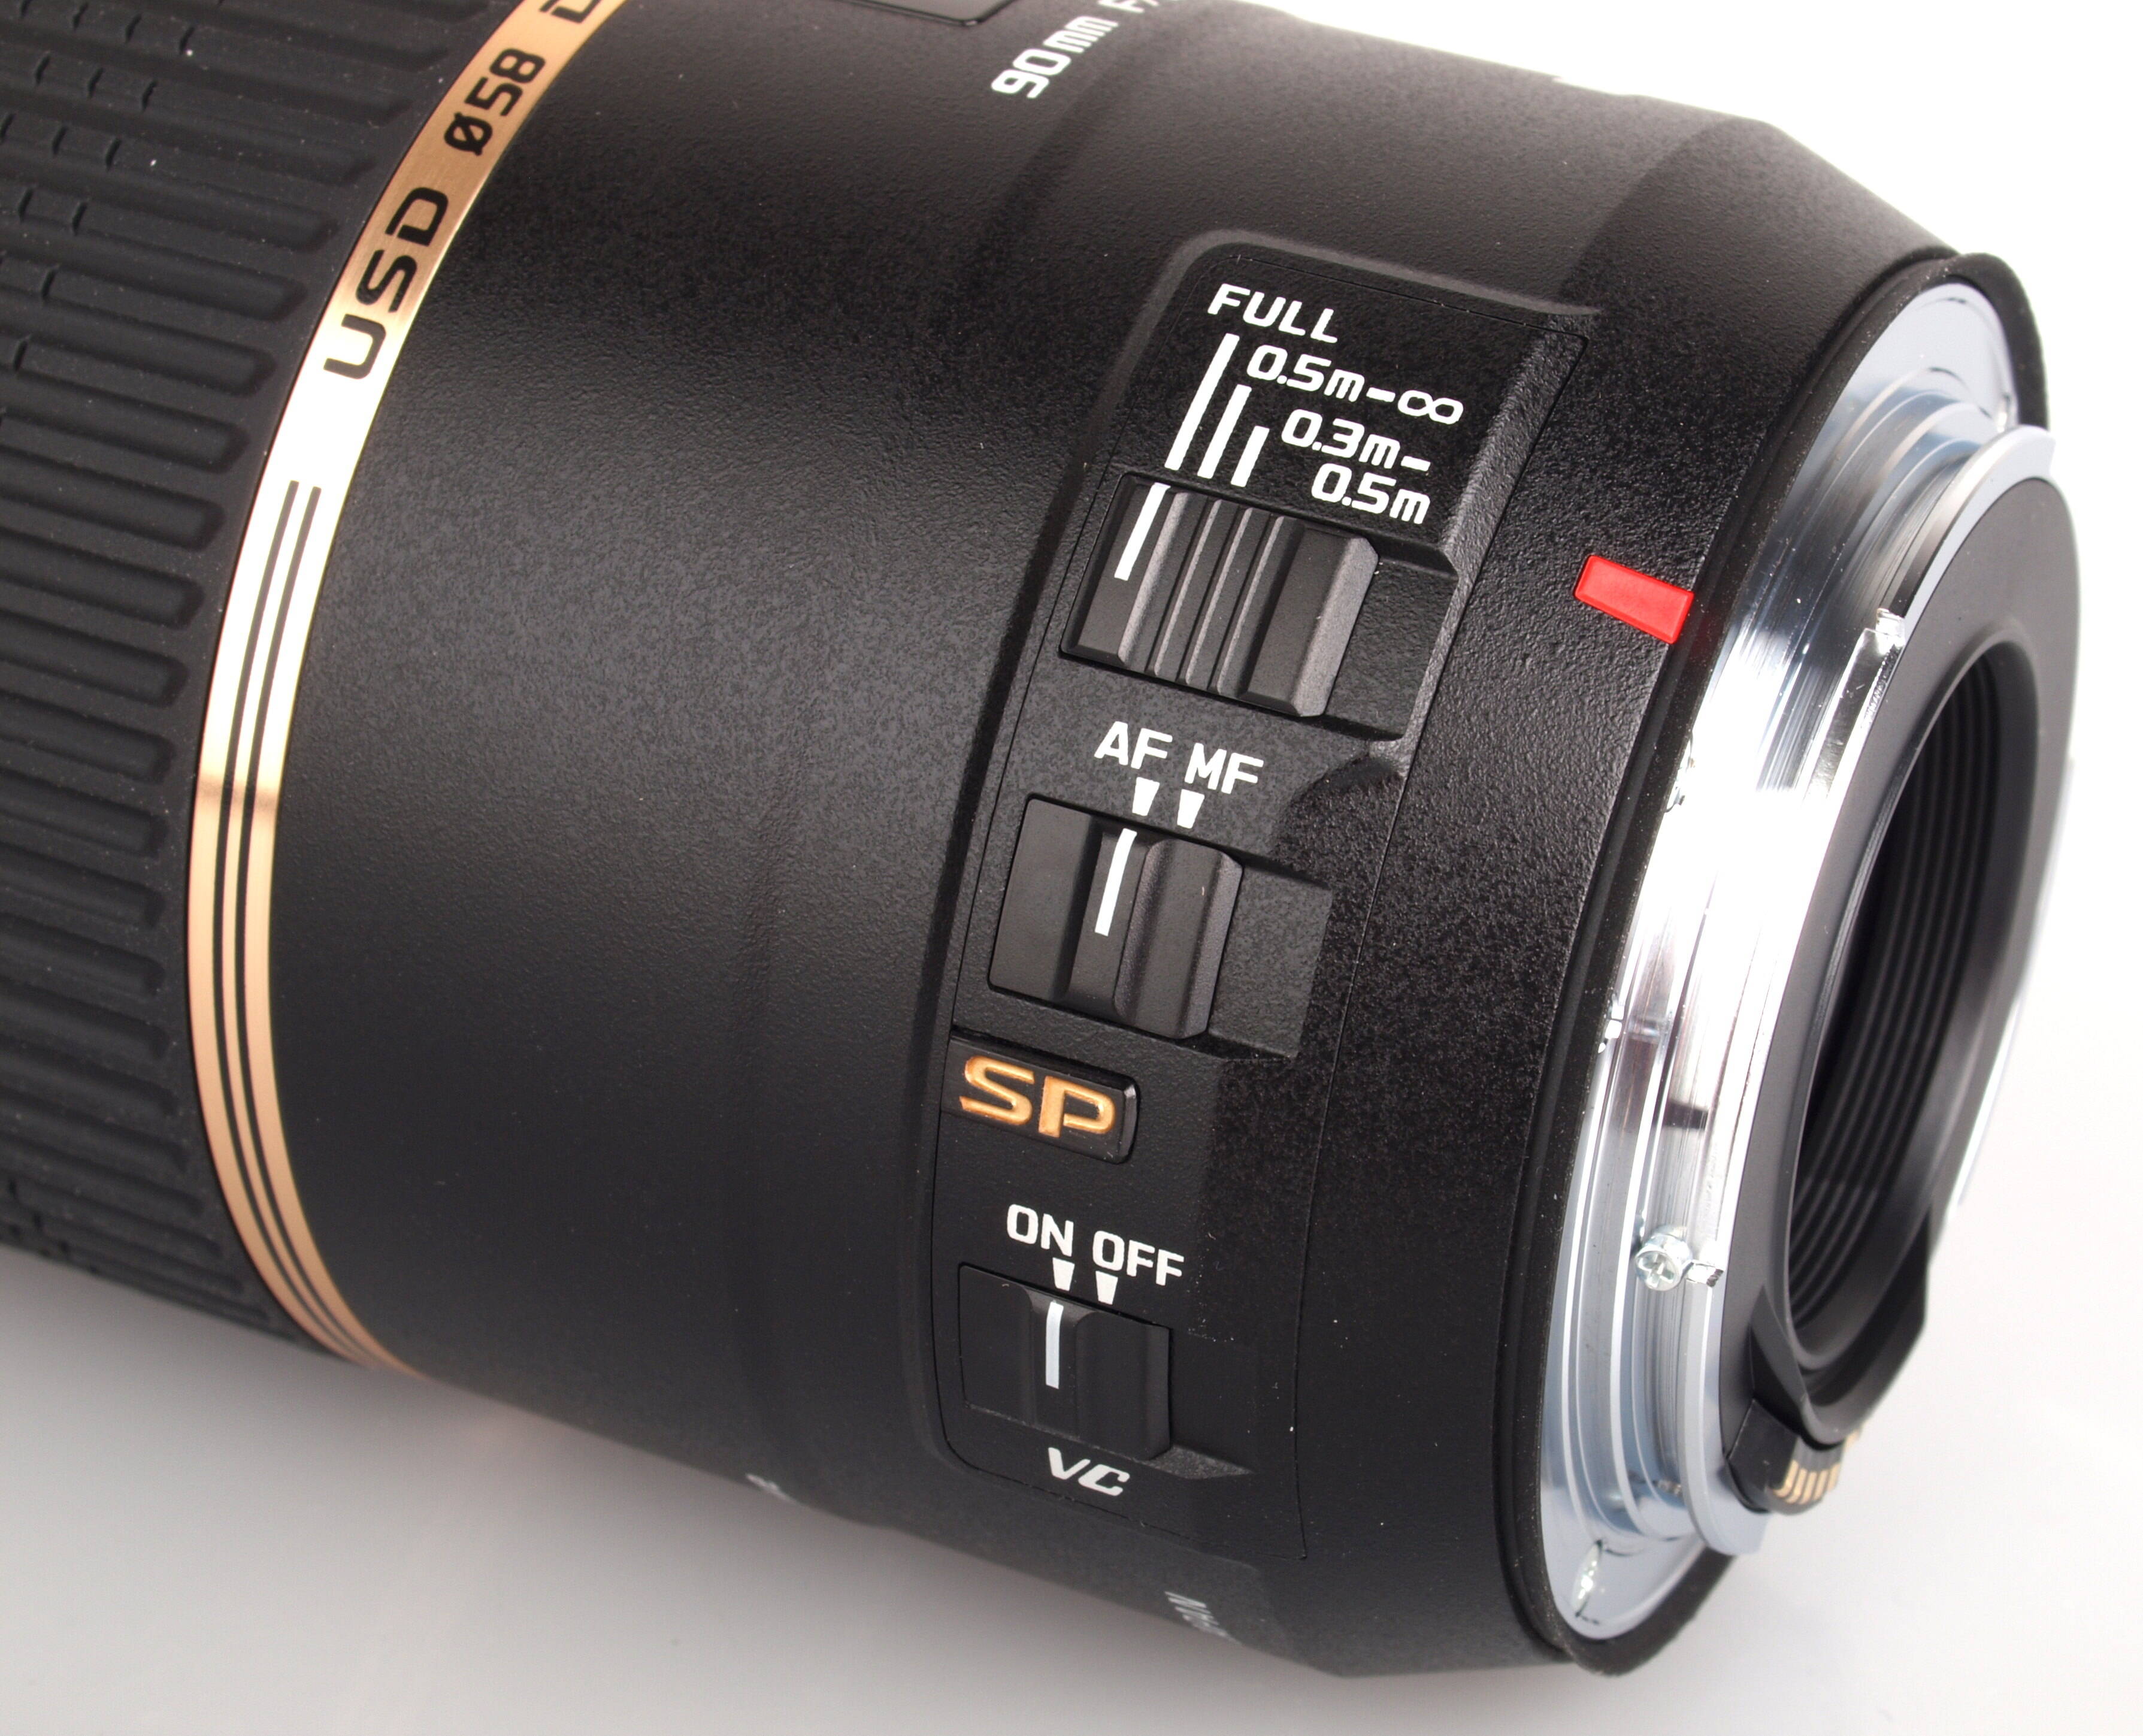 Tamron SP 90mm f/2.8 Di Macro VC USD Lens Review